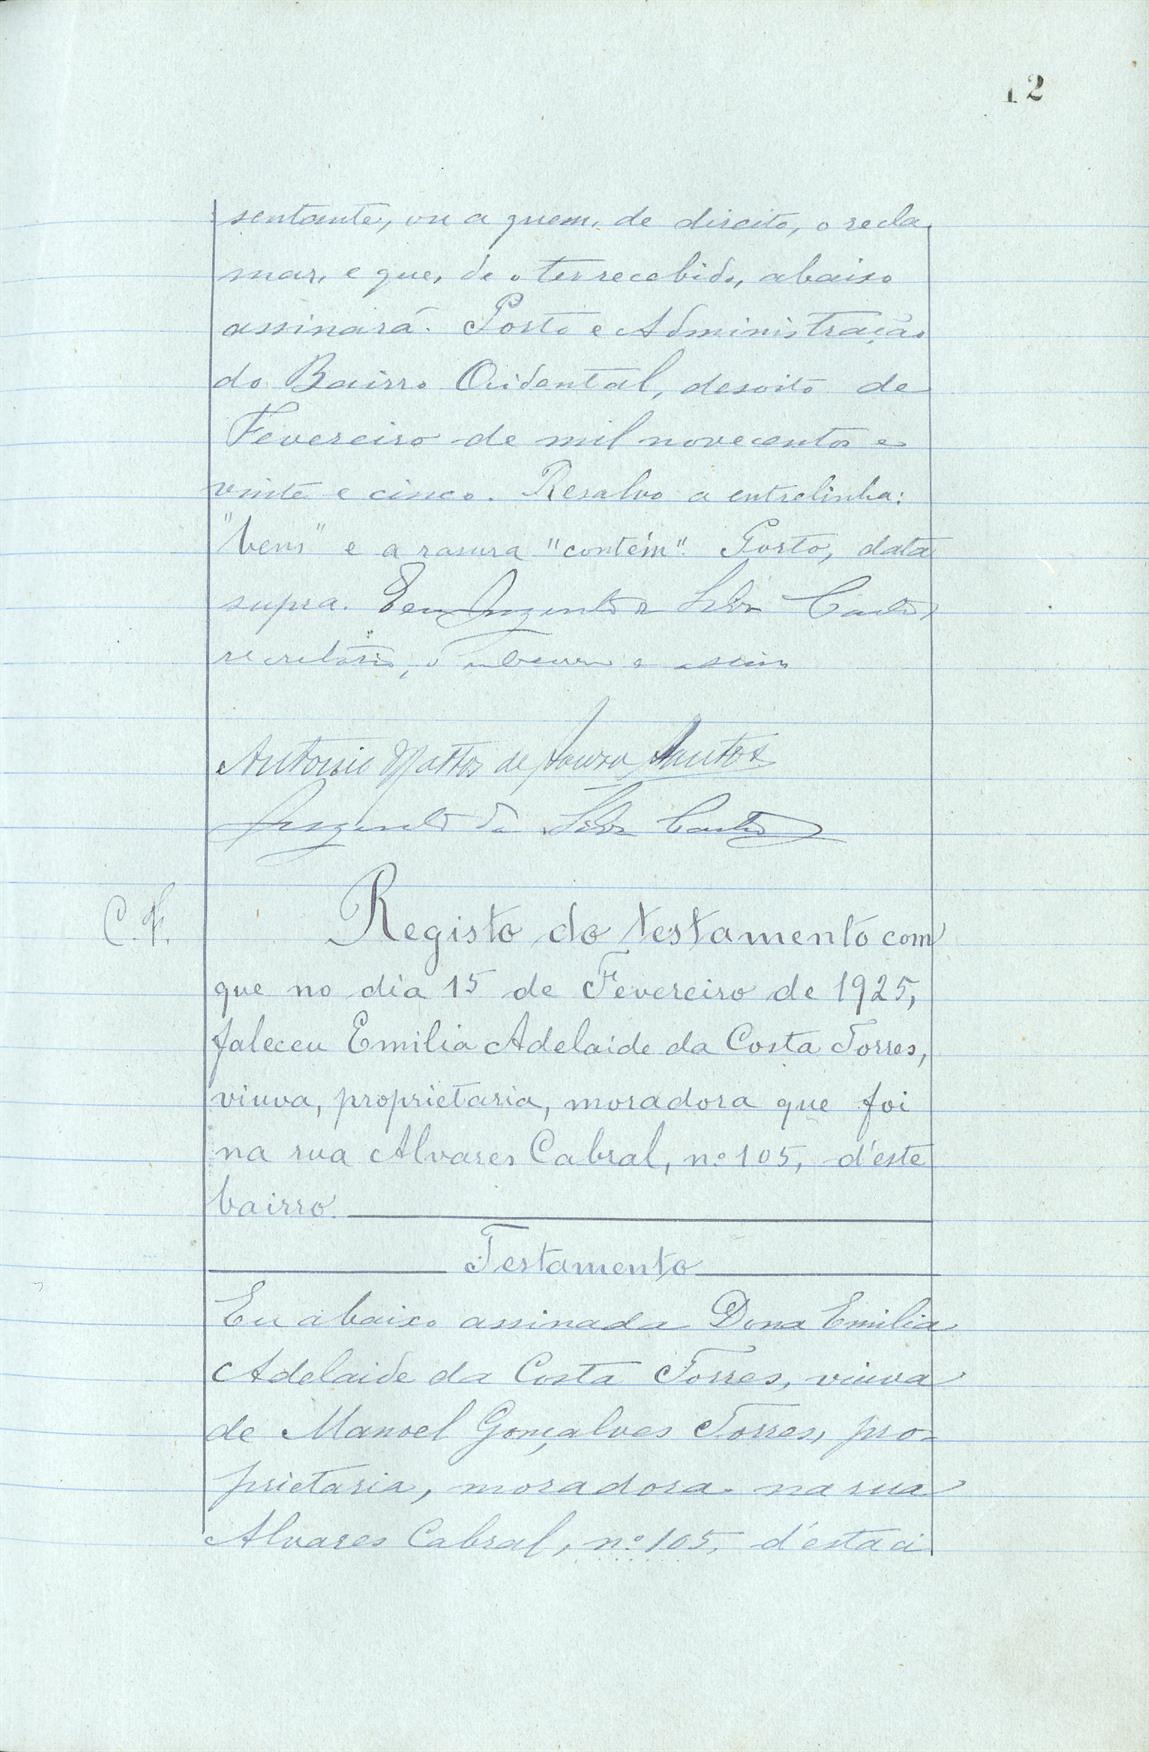 Registo do testamento com que faleceu Adolfo Pinto da Silva, proprietário, casado em segundas núpcias com Branca Montenegro Chaves da Silva